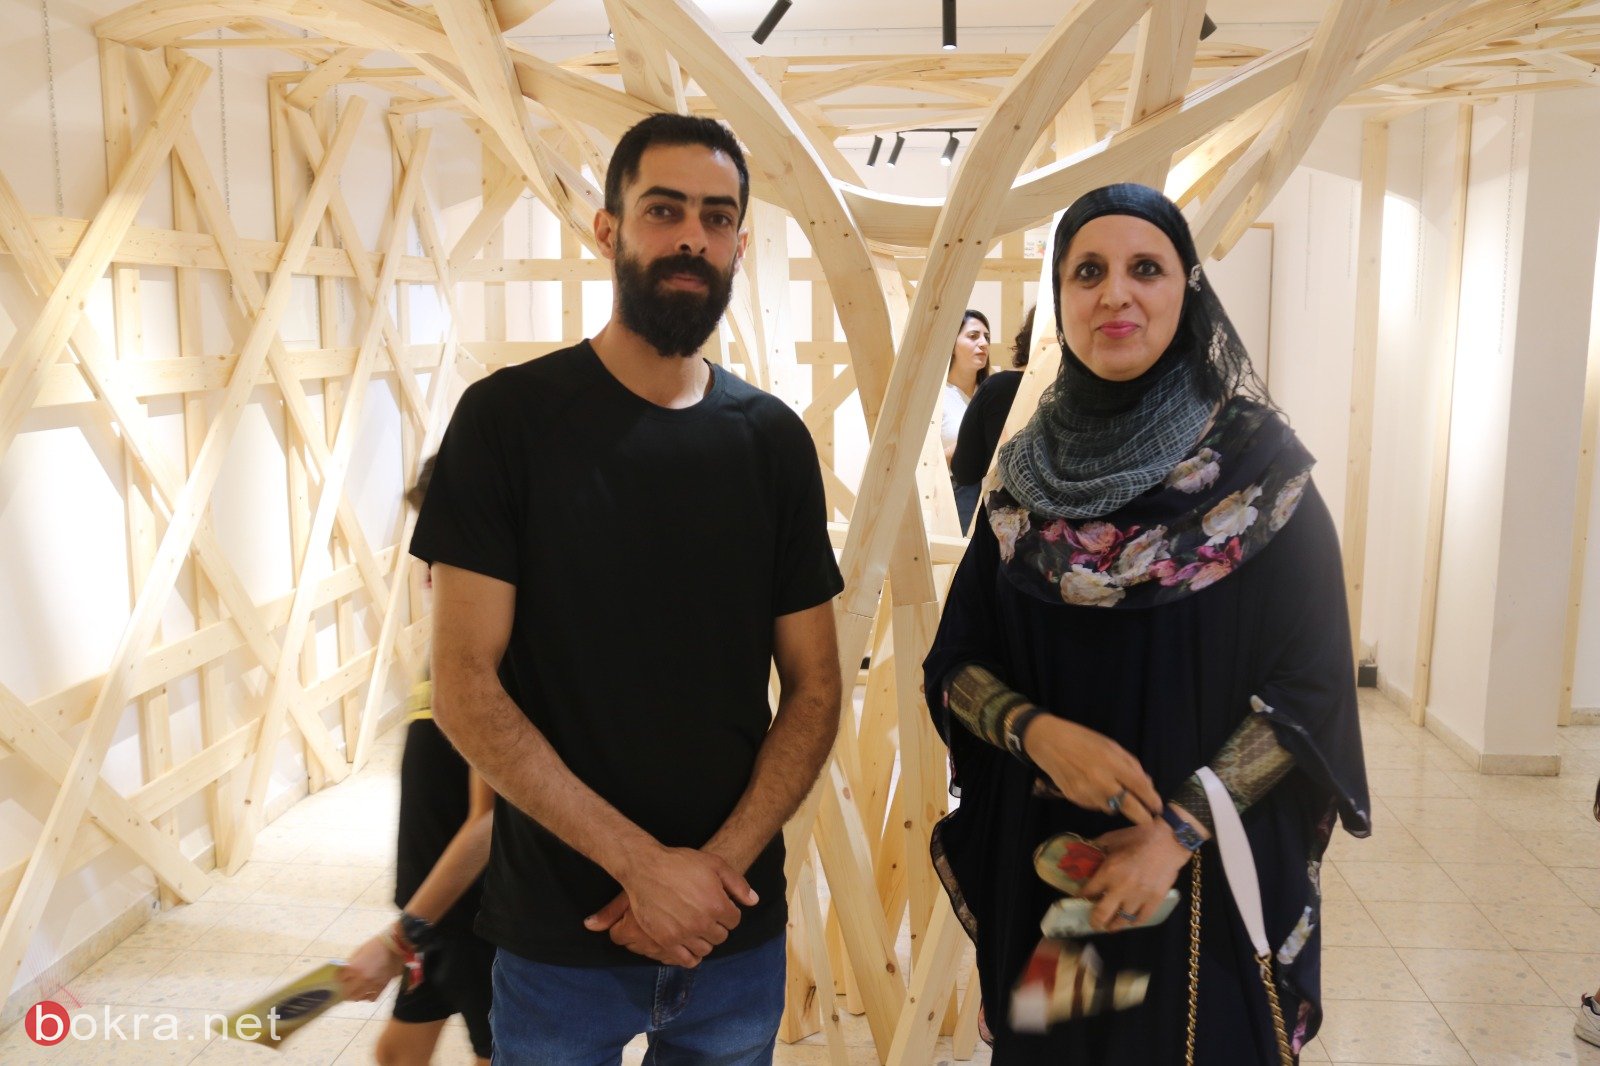 الفنان محمود قيس في معرضه المميز " في داخل الأرابيسك" في جاليري زركشي للفنون سخنين-12